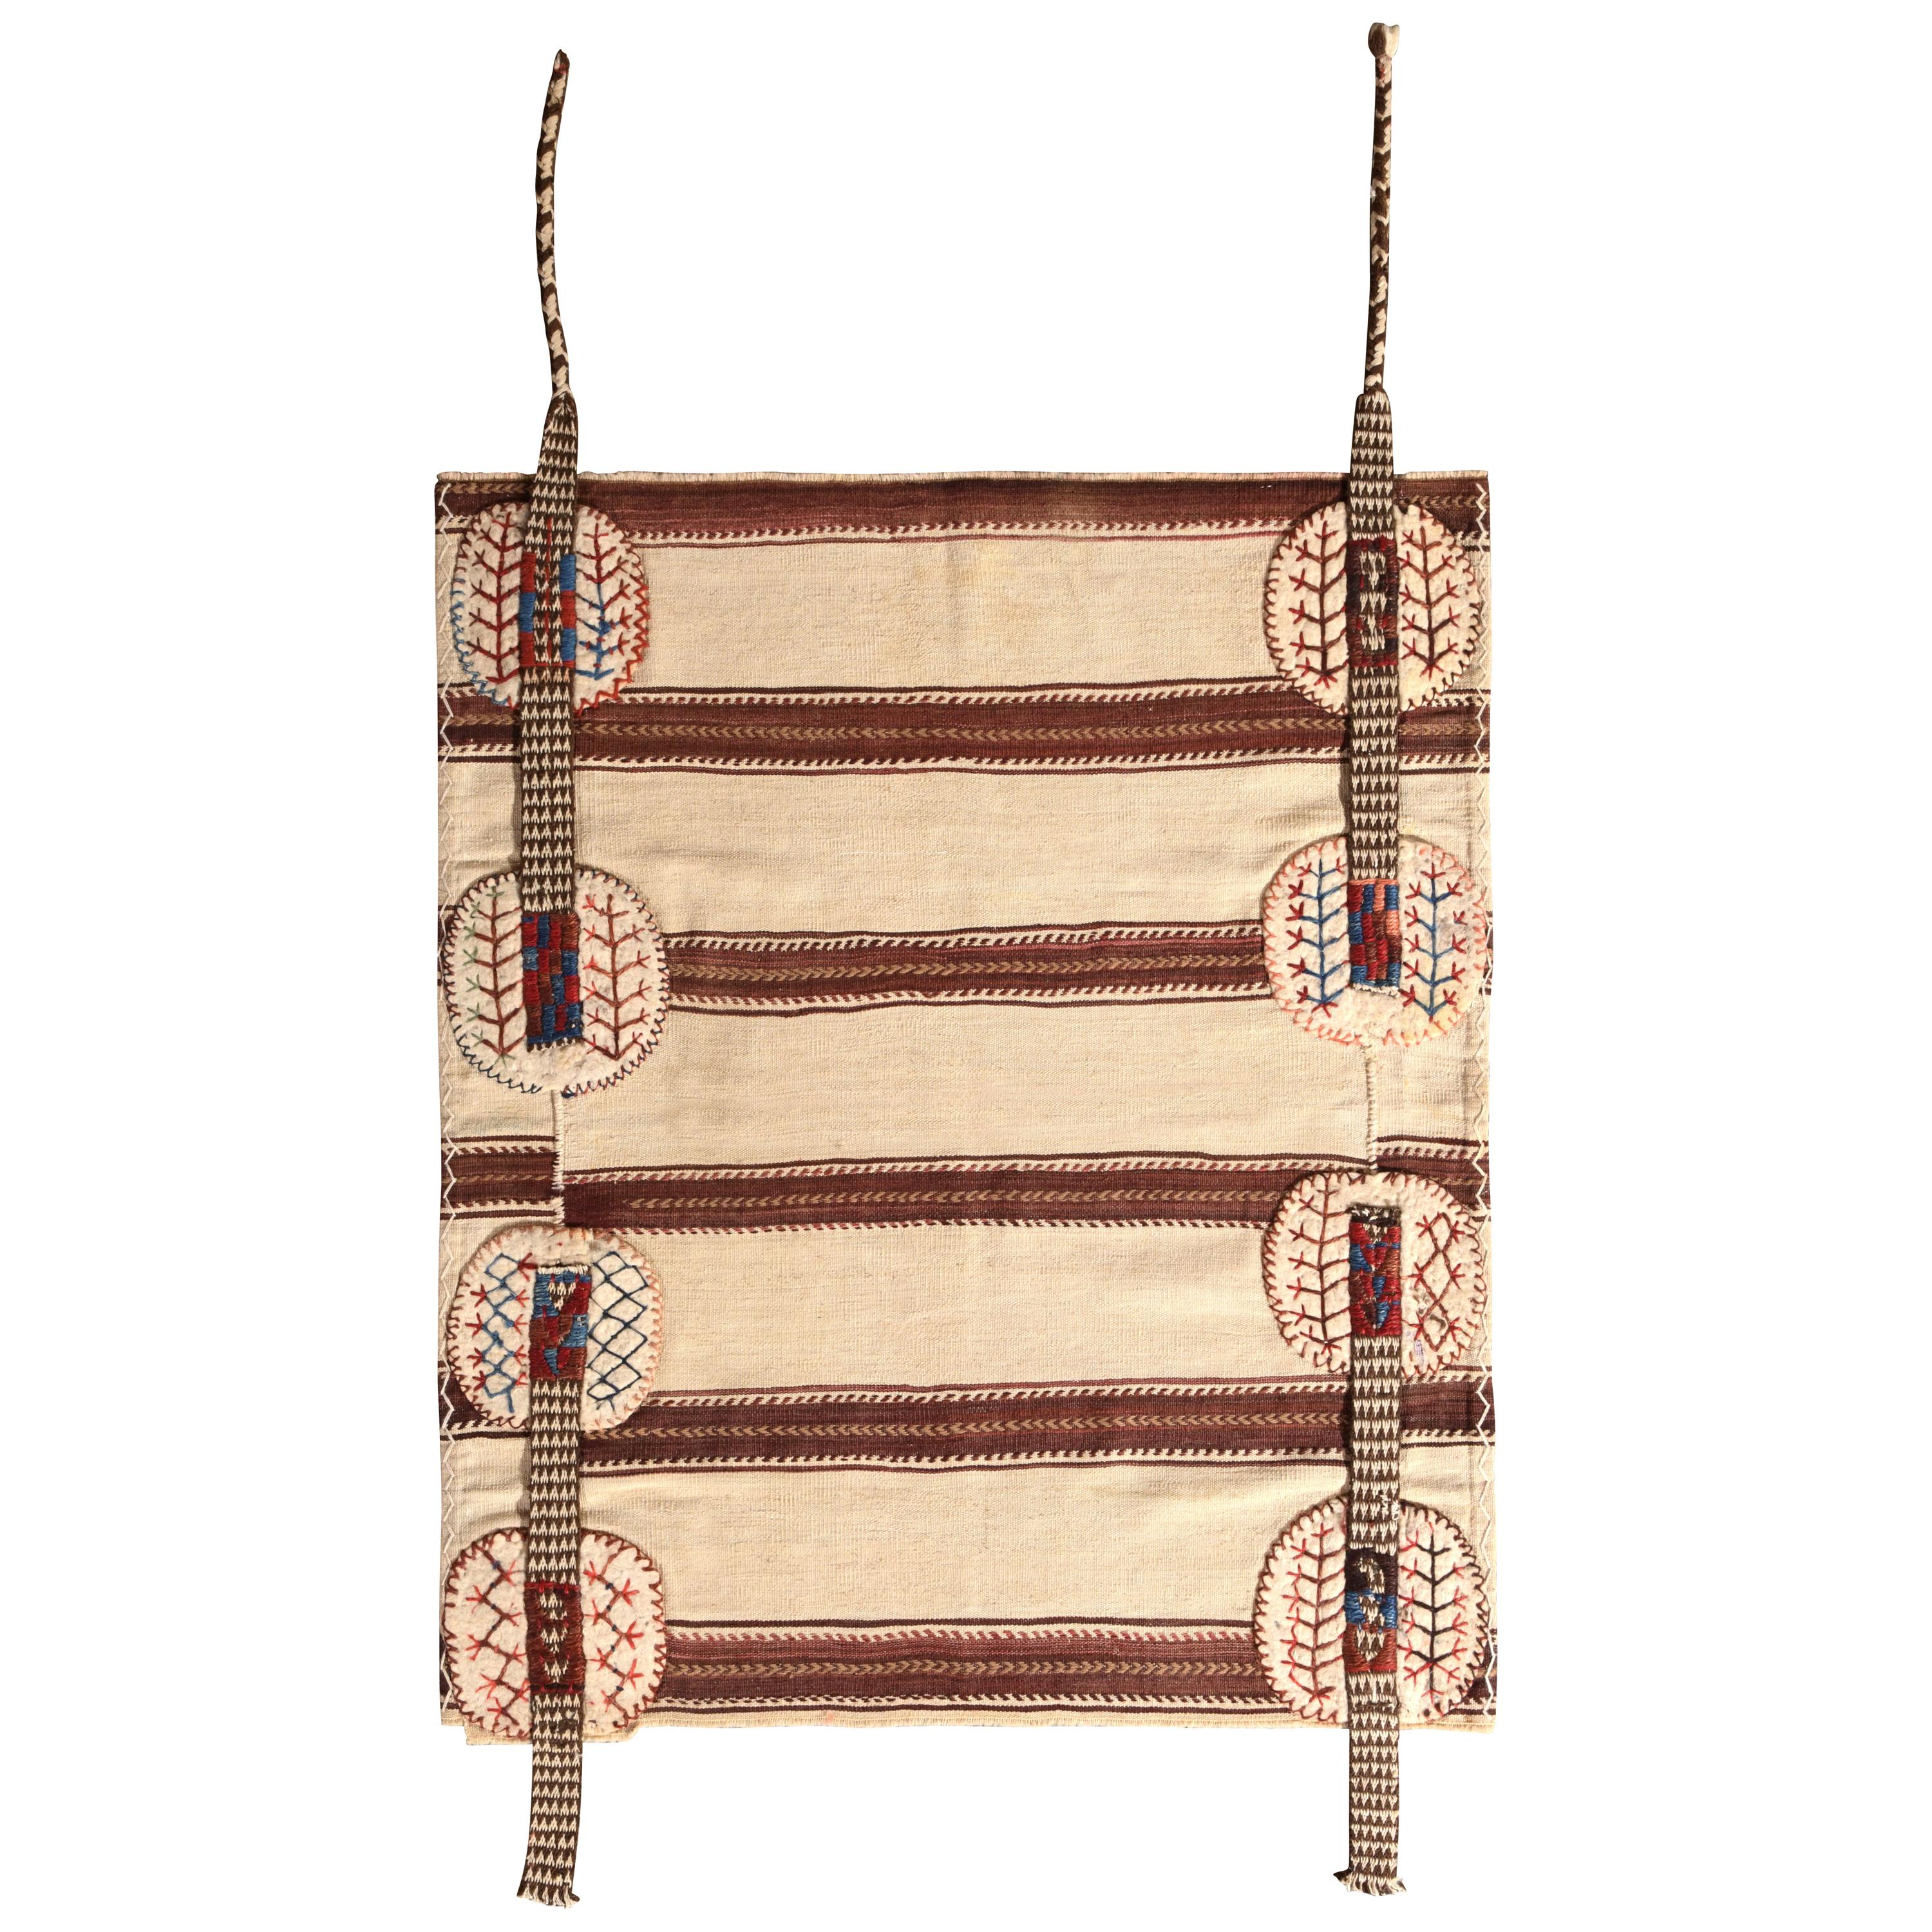 Midcentury Vintage Striped Kilim Beige Brown Bag Rug by Rug & Kilim For Sale